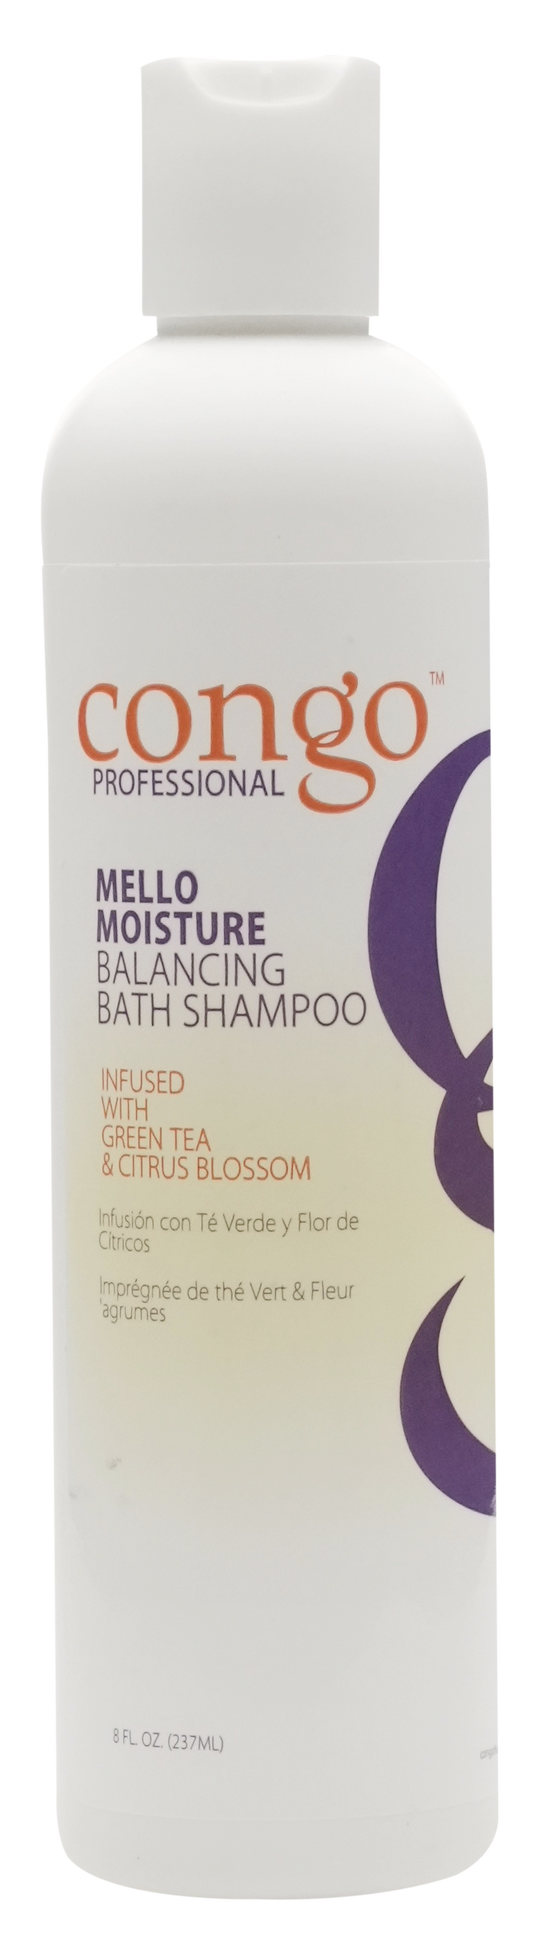 Congo - Mello Moisture - Balancing Bath Shampoo 8oz|32oz